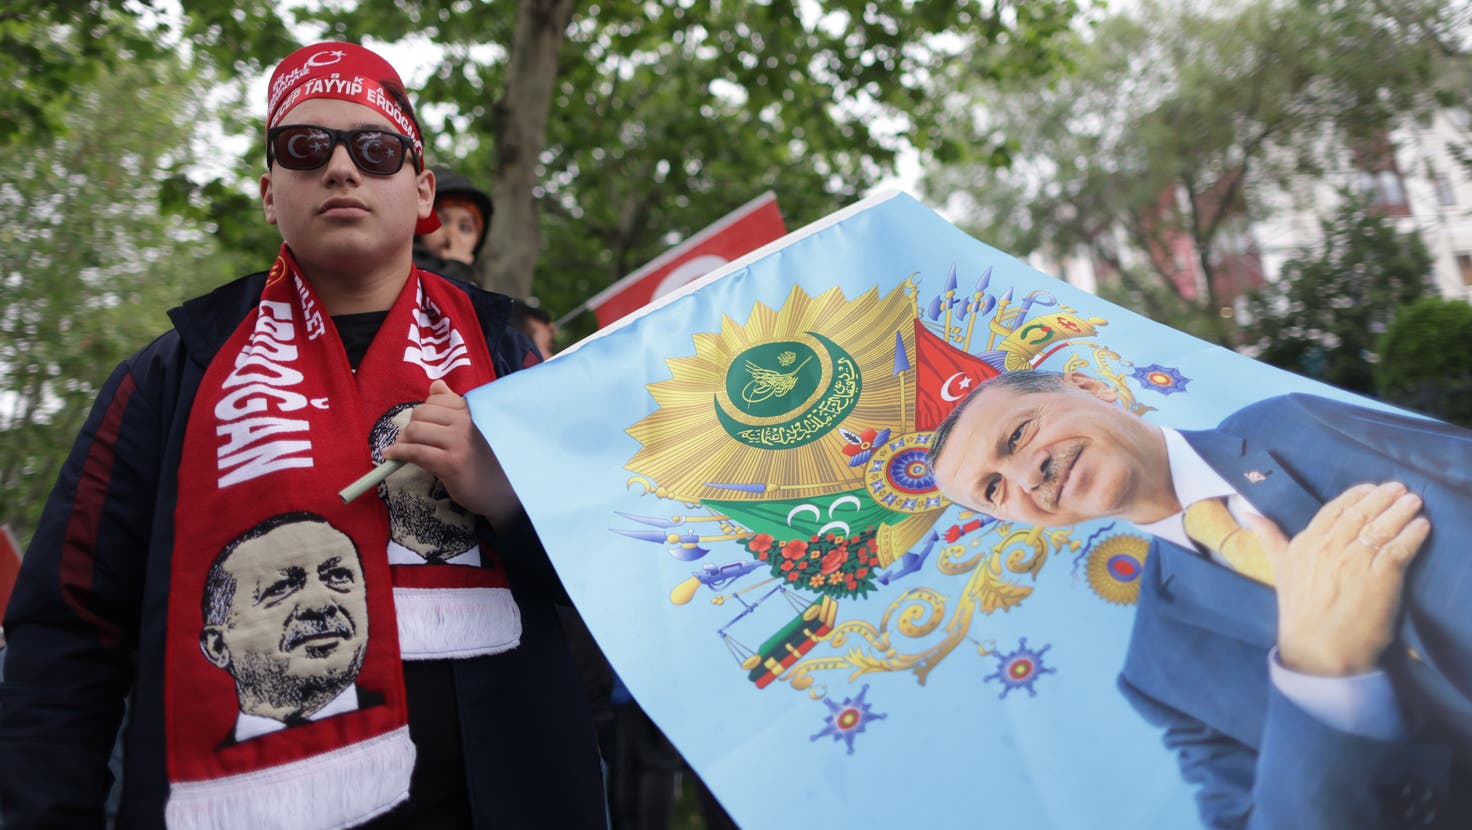 Recep Tayyip Erdogan scheint die Stchwahl gewonnen zu haben. Im Bild: Ein Erdogan-Wähler mit Erdogan-Schal und -Flagge. (Bild: Erdem Sahin / EPA)